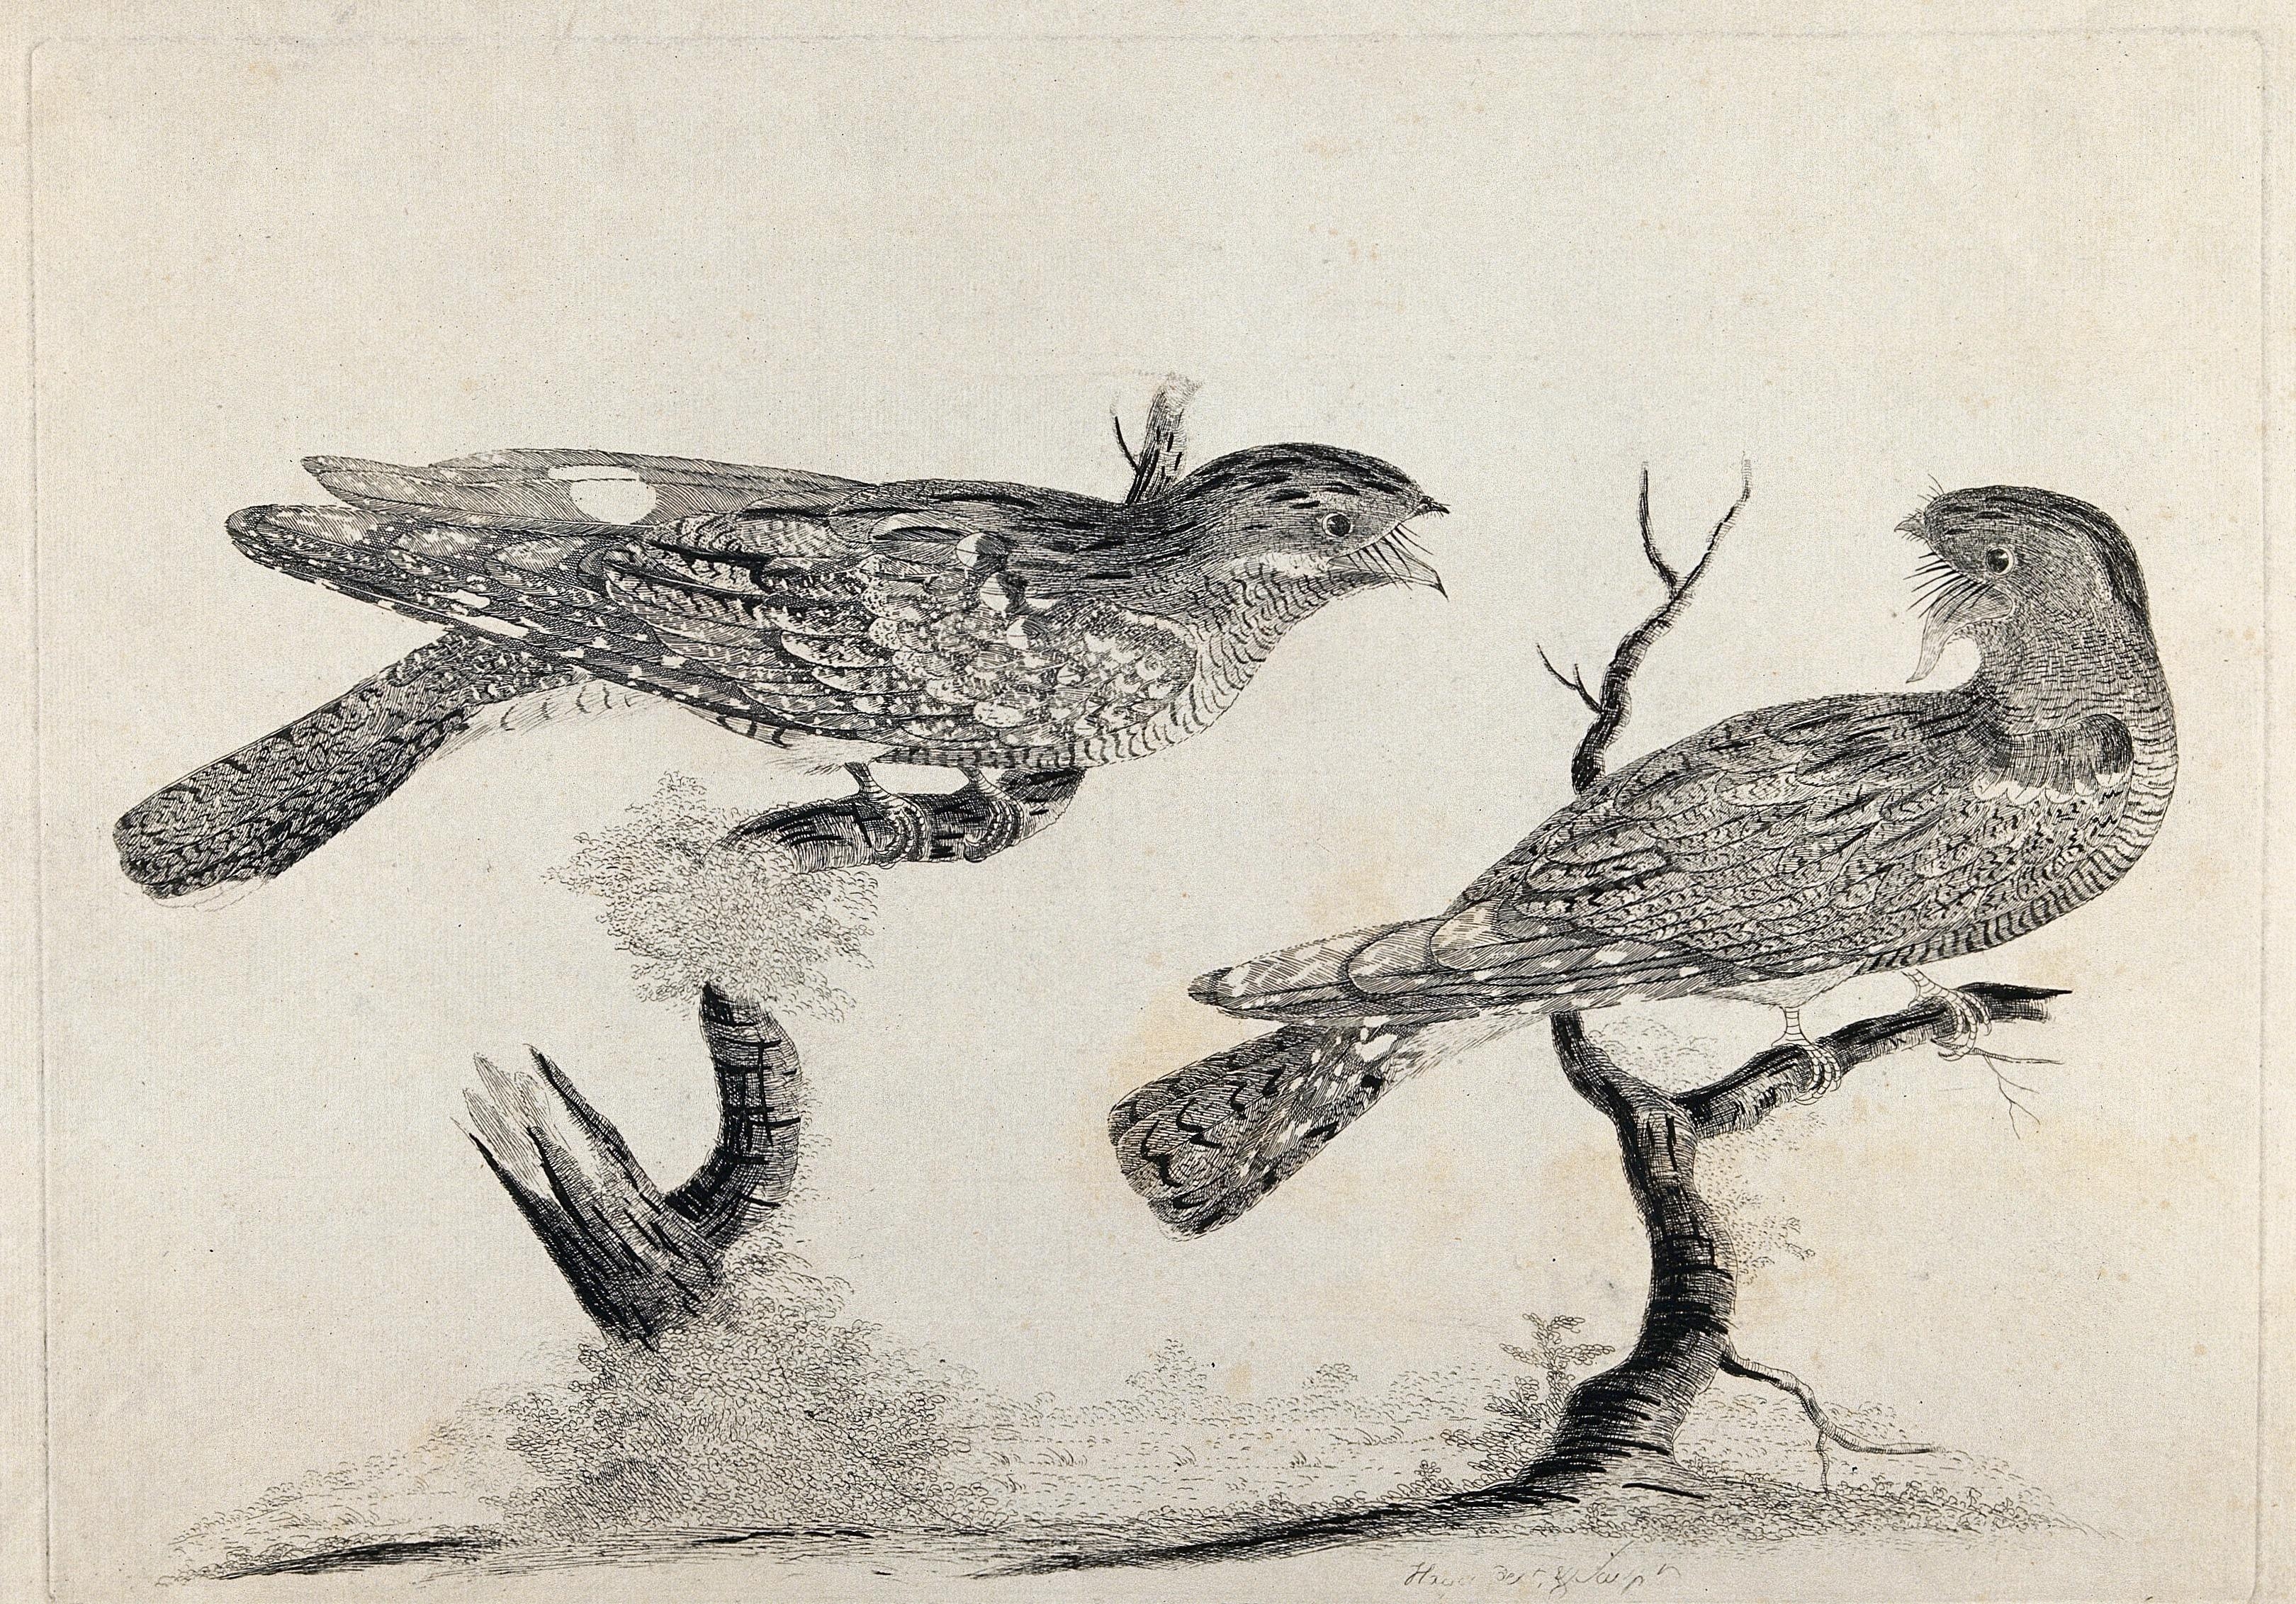 Офорт анималистика. Древняя птица веерохвостая рисунок. Дети ловят птиц в древности.